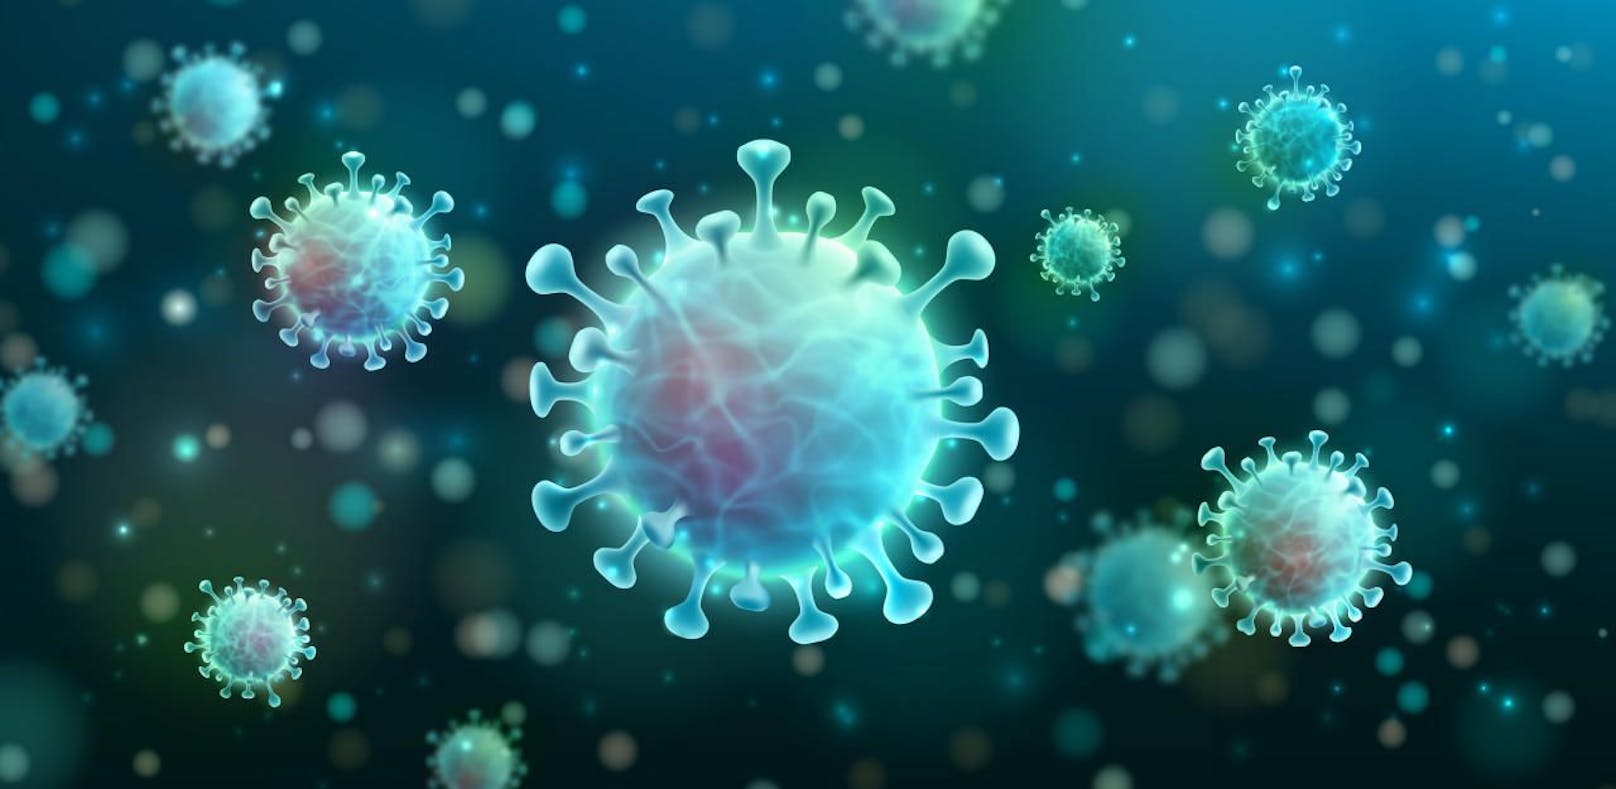 Echt oder fake? Diese Frage stellt man sich angesichts der unzähligen Meldungen zum Coronavirus Sars-CoV-2 und seinen Auswirkungen auf die Welt regelmäßig. Hier erfährst du, was dahinter steckt.